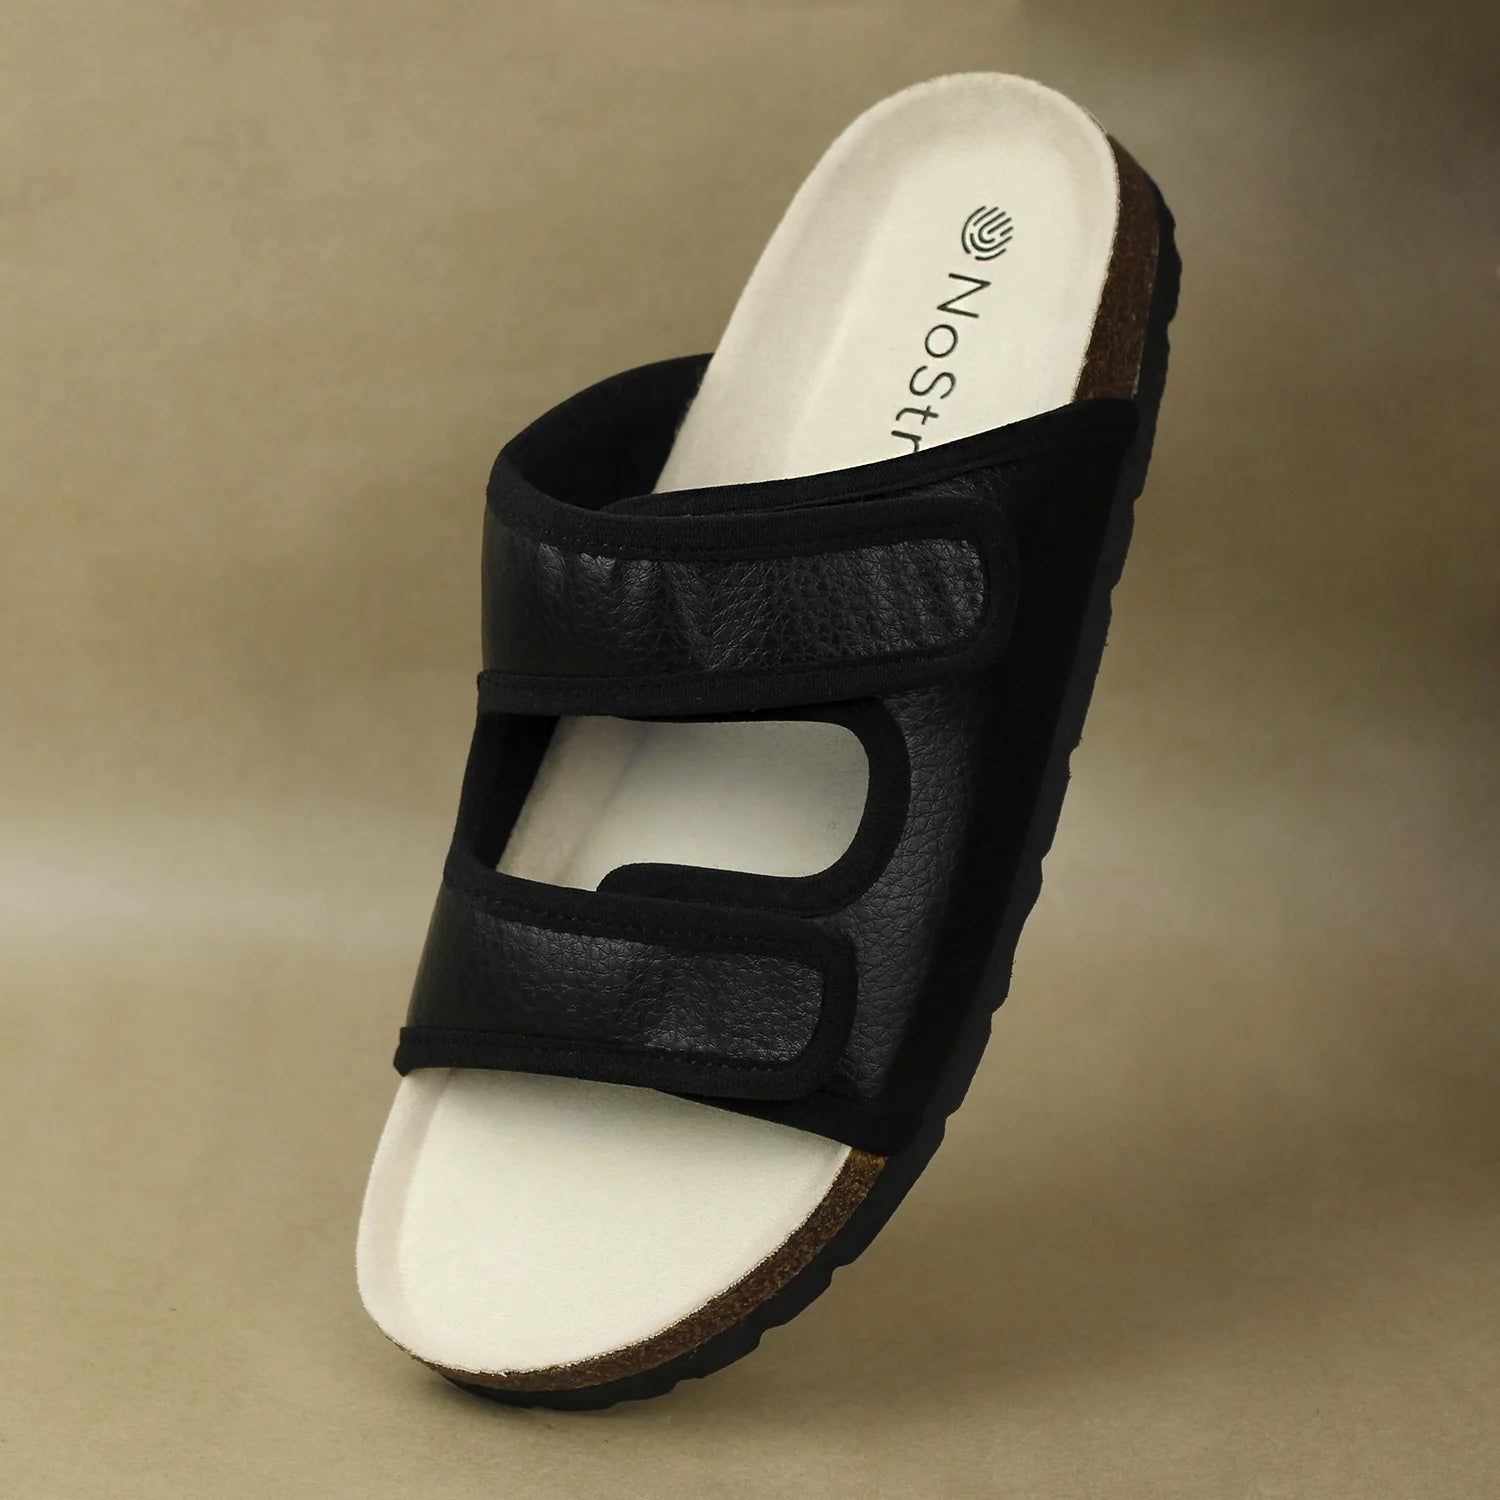 Men's Black Water Shoe Sandals - Zerraport II | KEEN Footwear